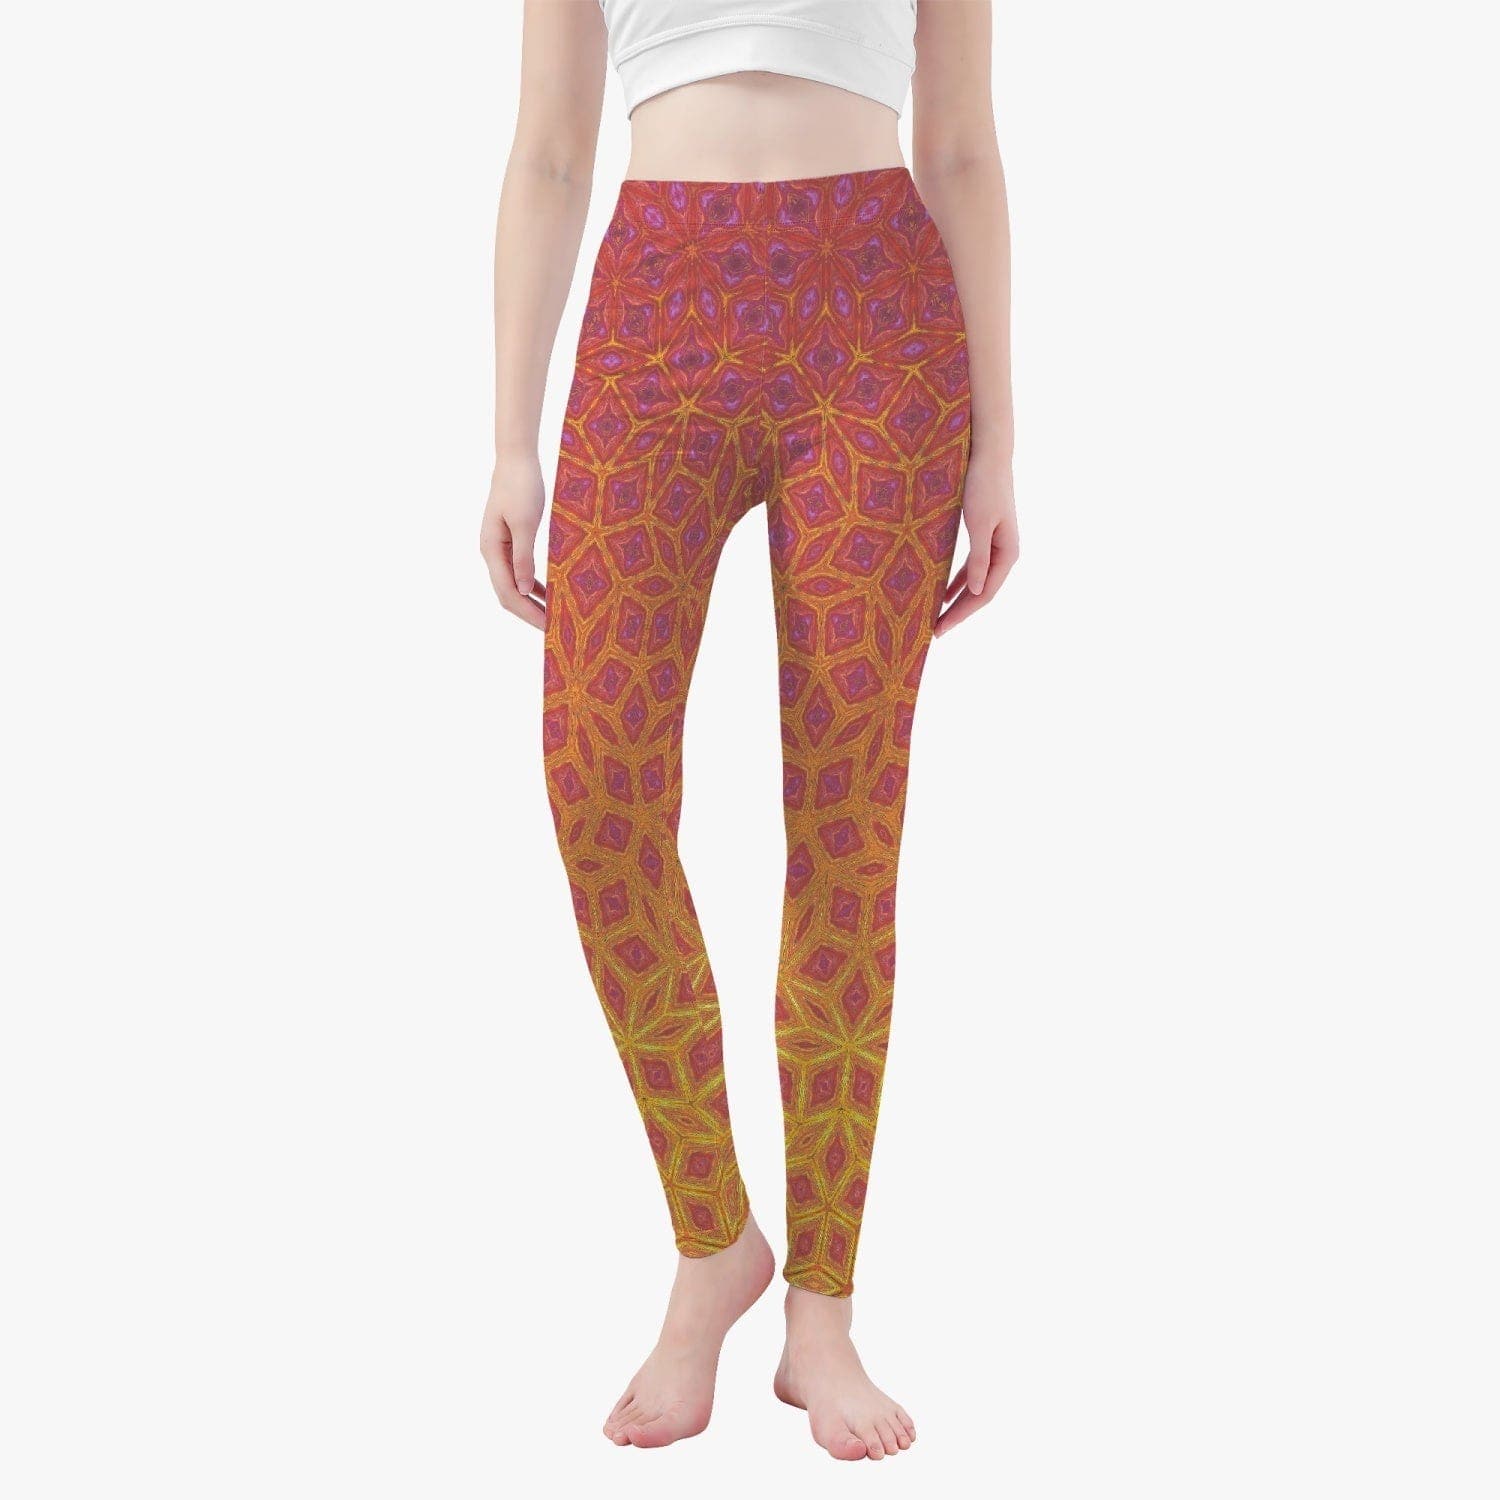 Winter dawn. Yoga Pants/leggings by Sensus Studio Design